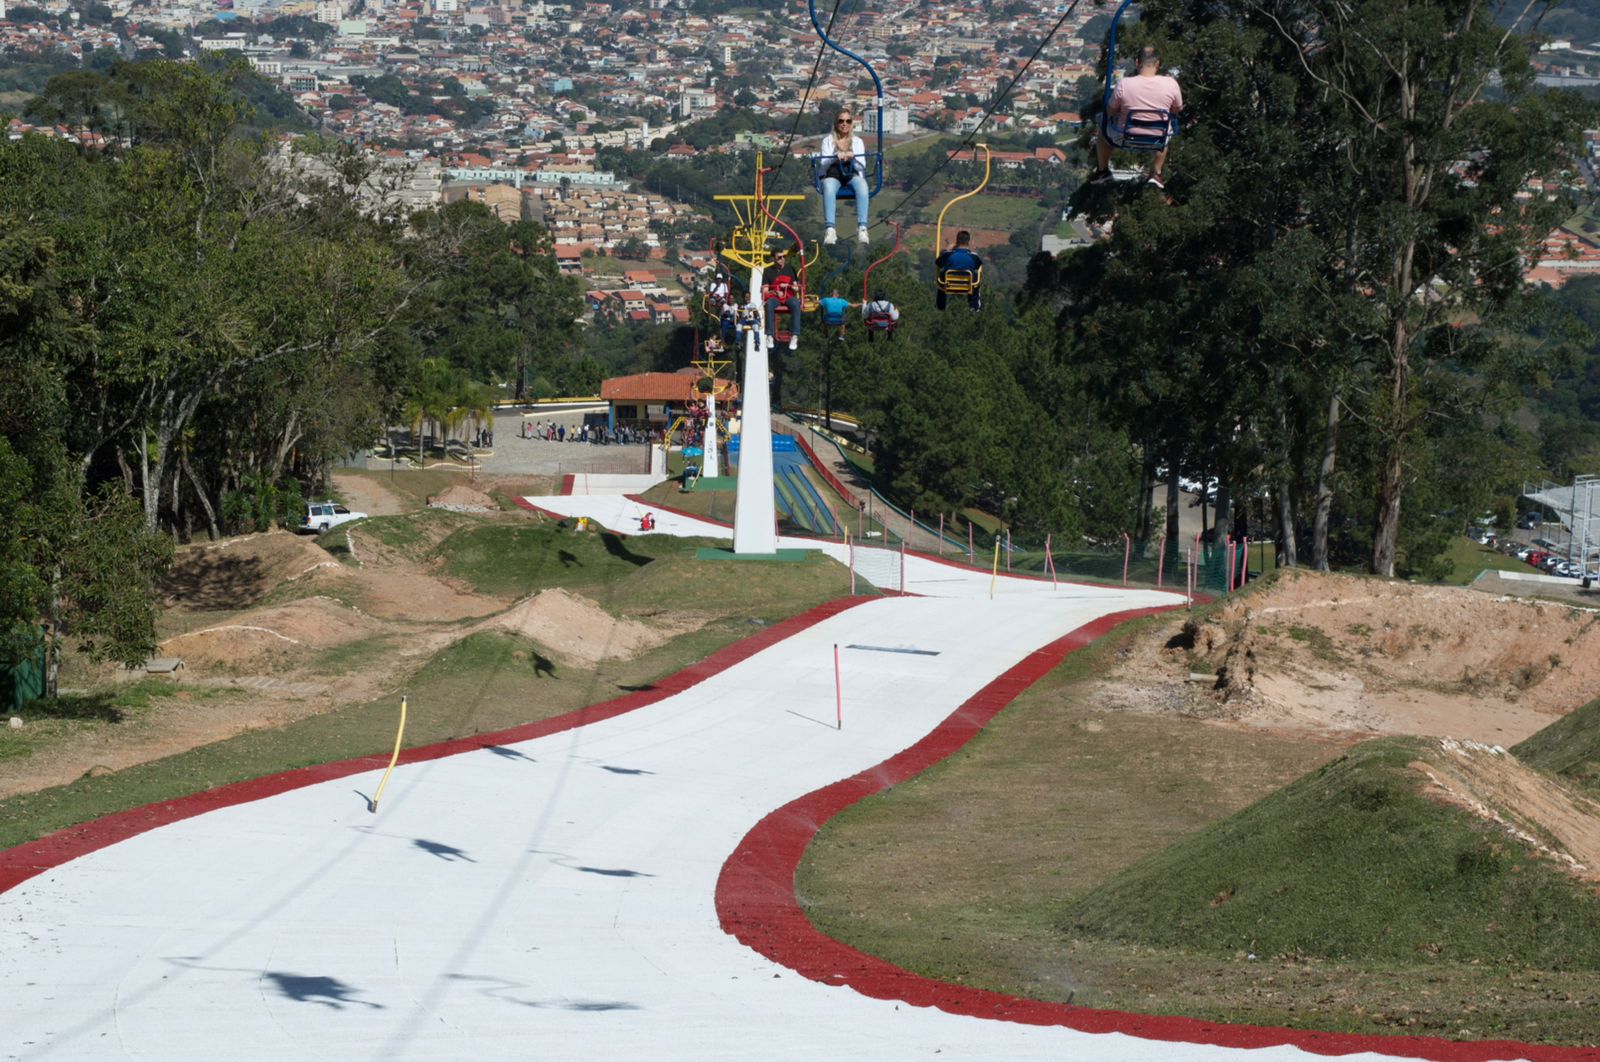 Ski Park volta a funcionar em São Roque (SP)